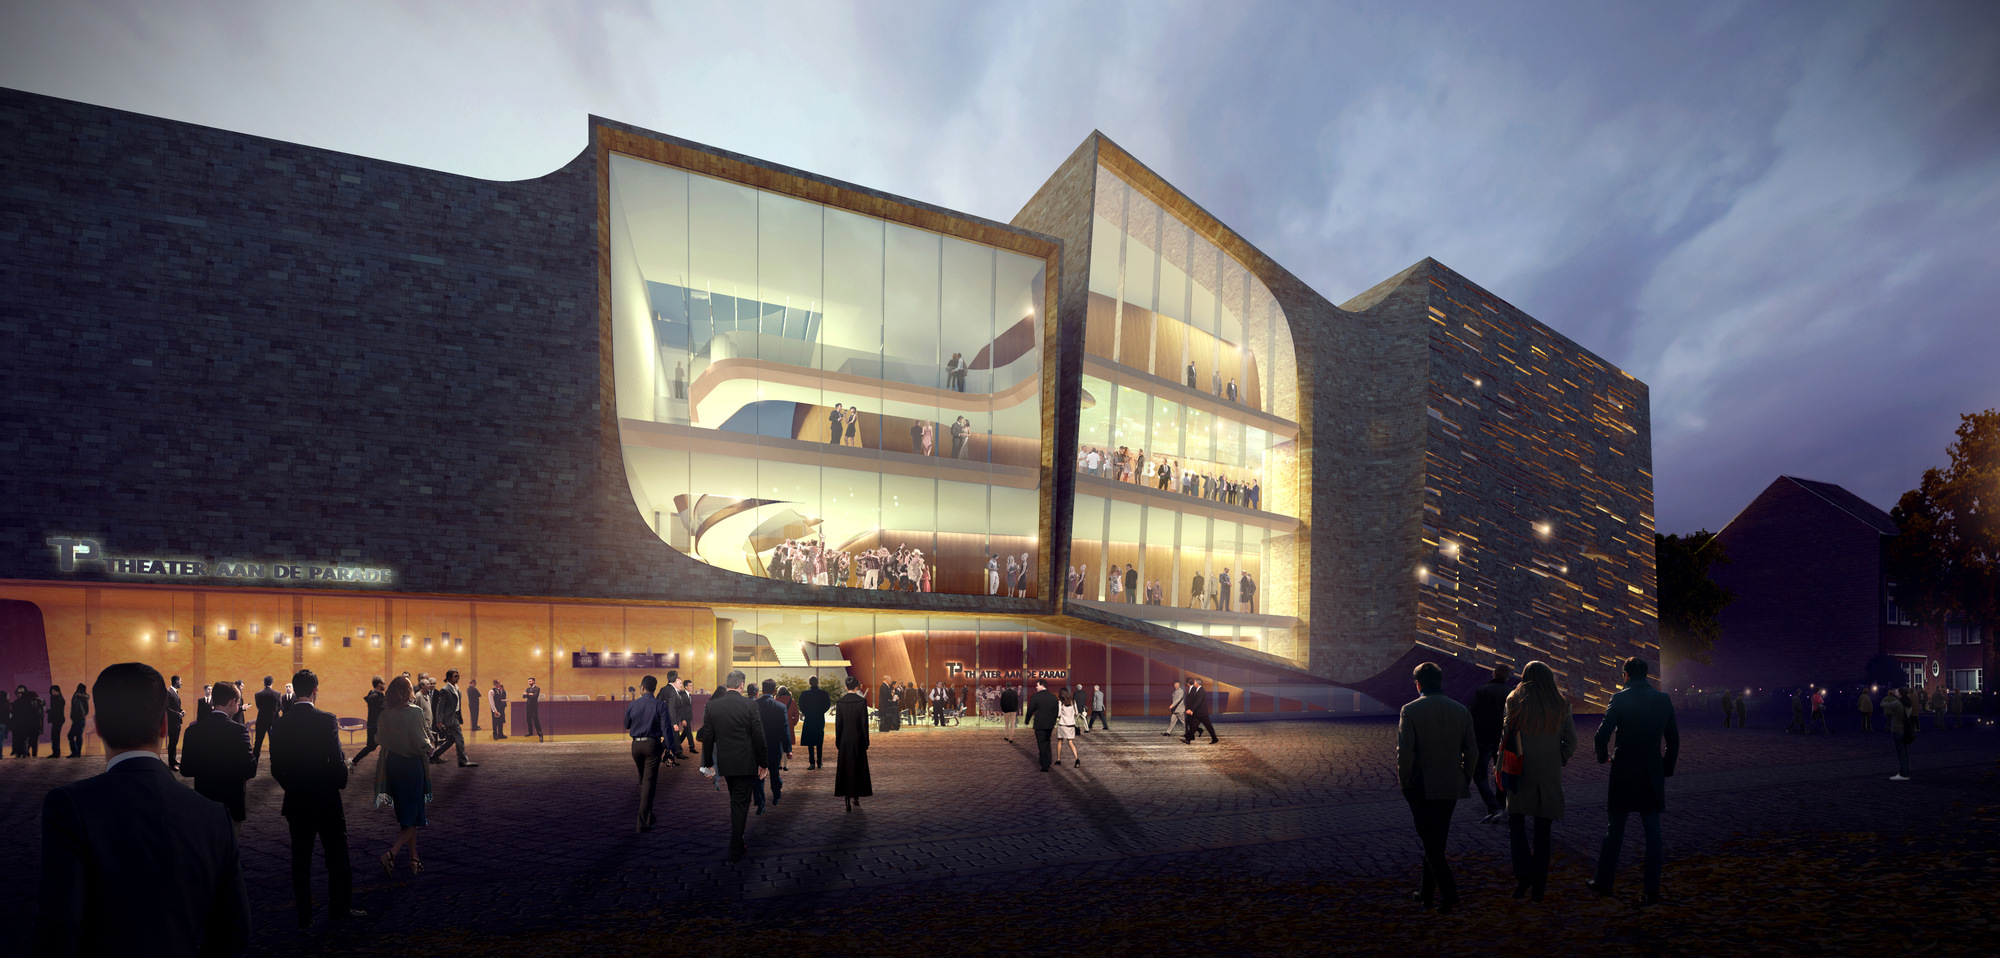 UNStudio's design selected for new theatre in Den Bosch